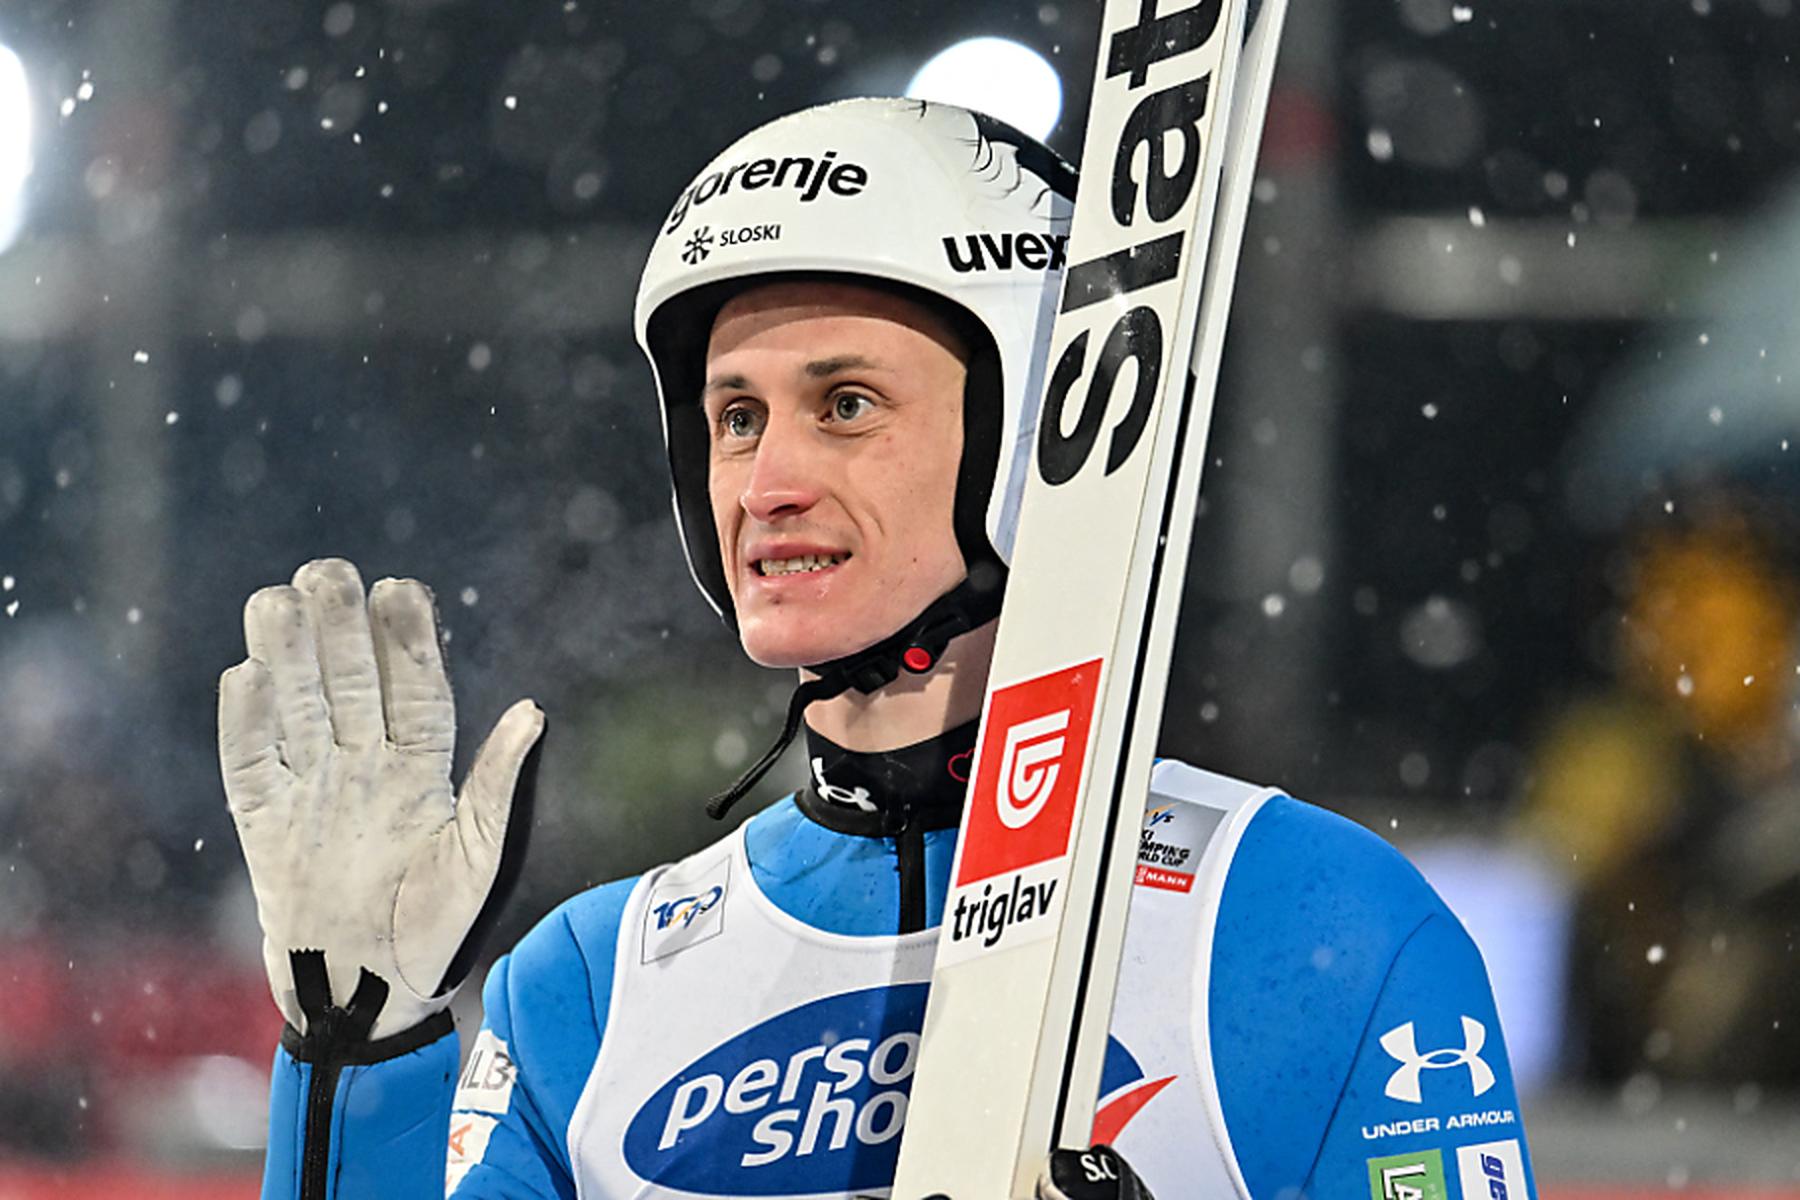 Ljubljana | Skispringer Peter Prevc beendet Ende März seine Karriere